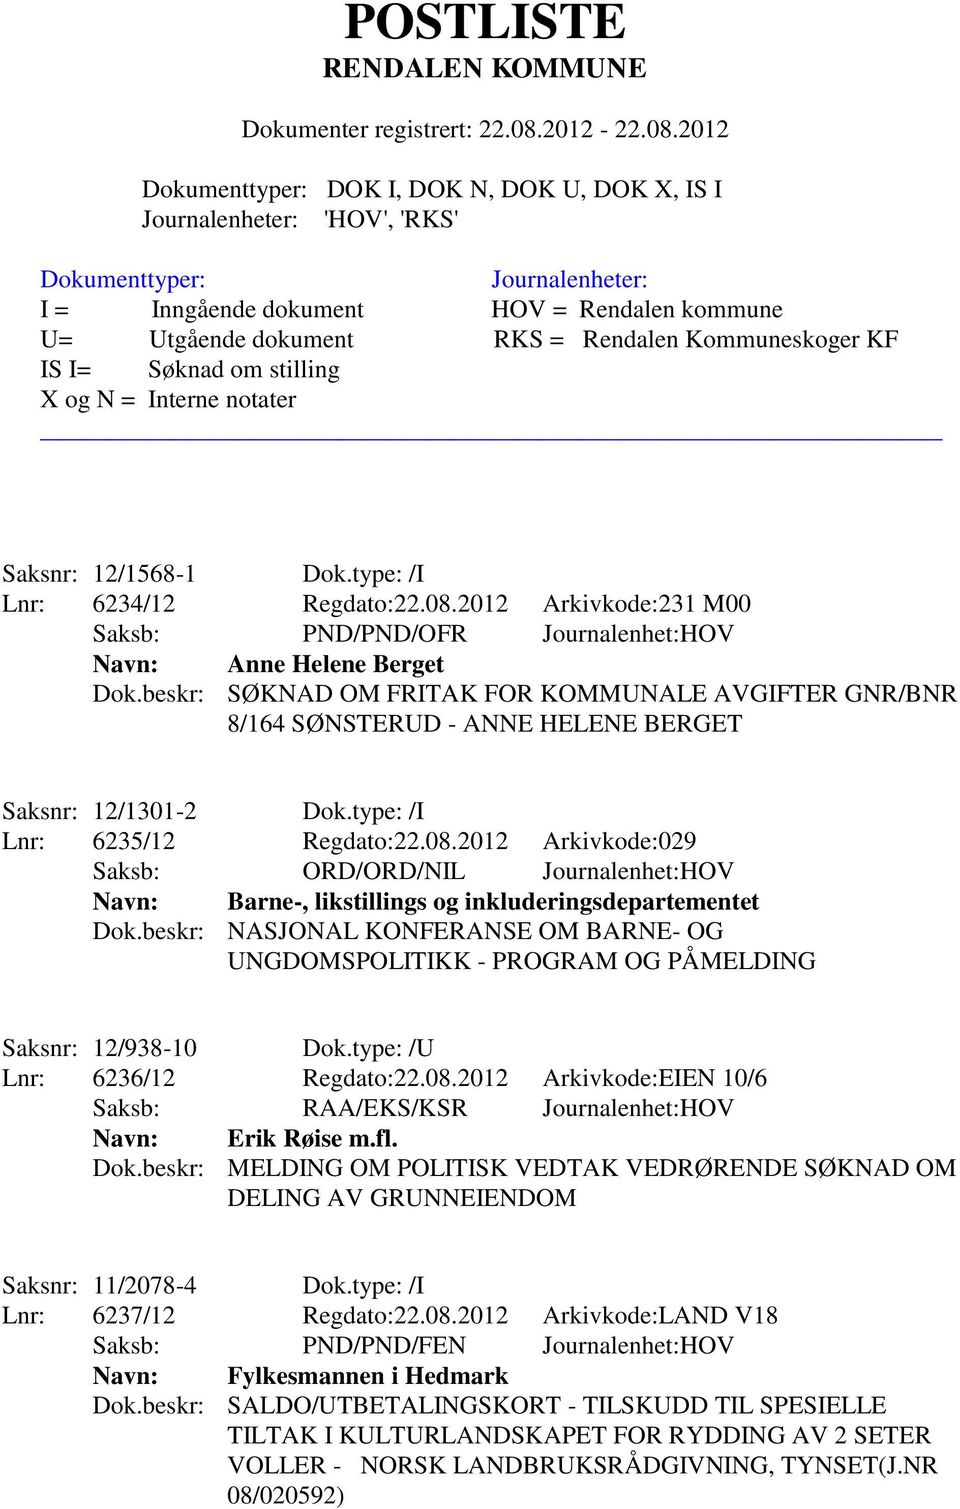 2012 Arkivkode:029 Saksb: ORD/ORD/NIL Journalenhet:HOV Navn: Barne-, likstillings og inkluderingsdepartementet Dok.